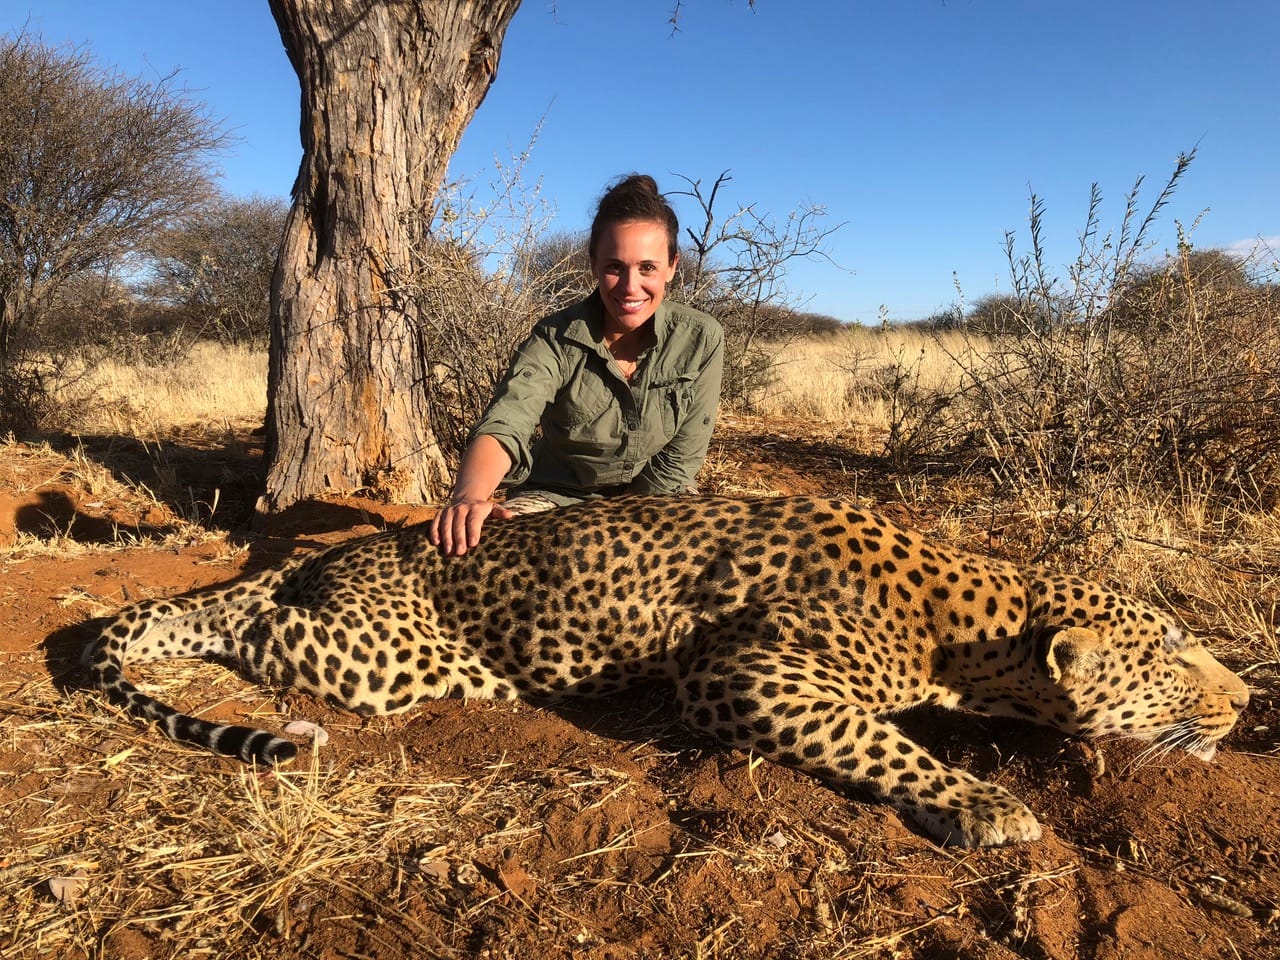 Hunter Britt Longoria with a leopard